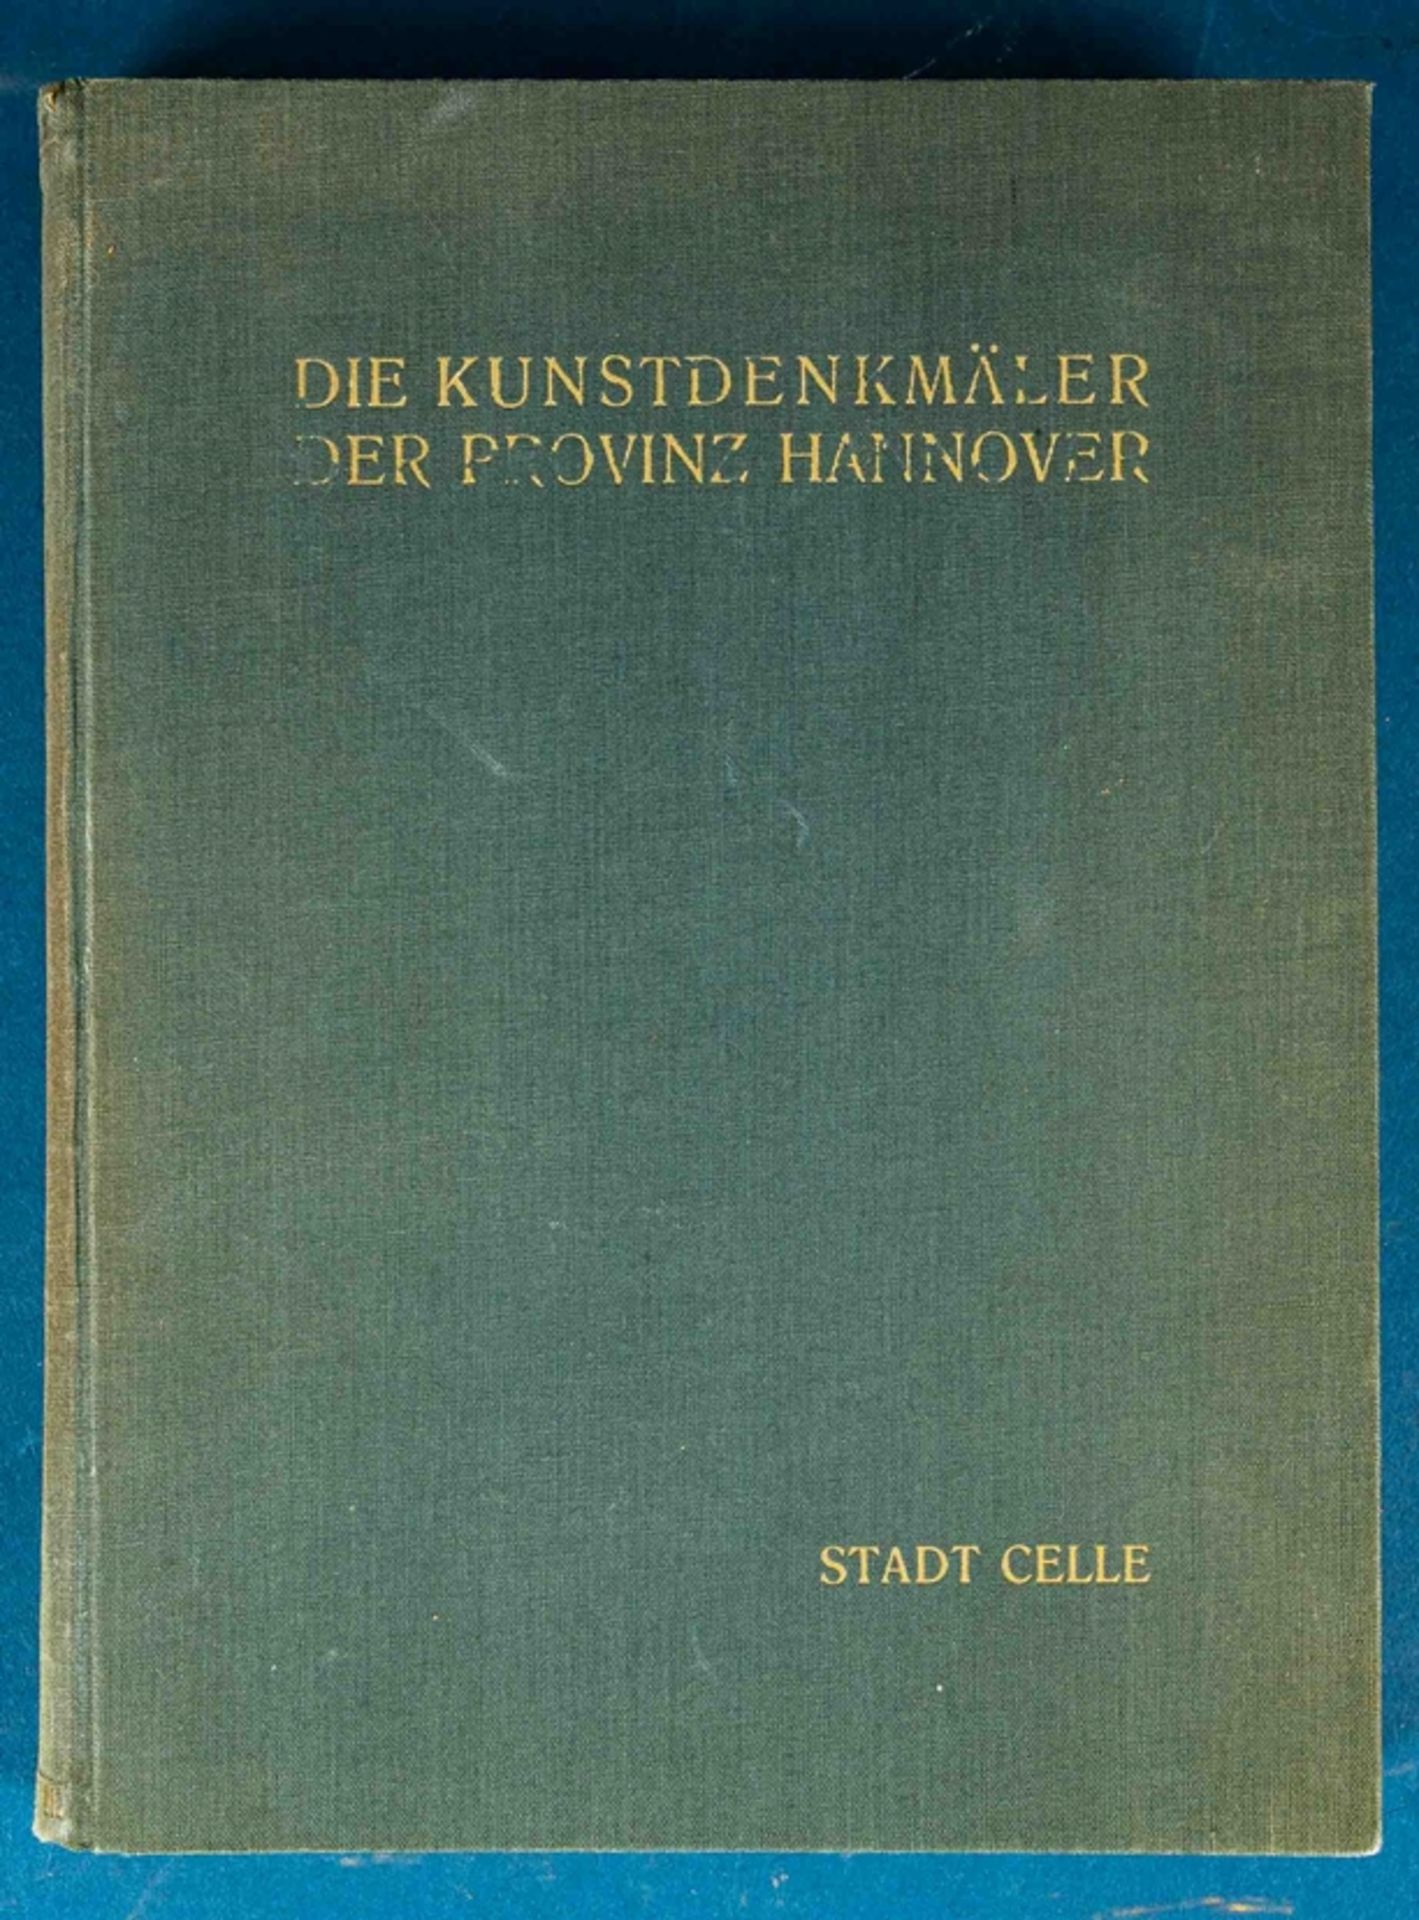 Die Kunstdenkmäler der Provinz Hannover "Stadt Celle" von 1937. Einband mit deu - Image 2 of 5